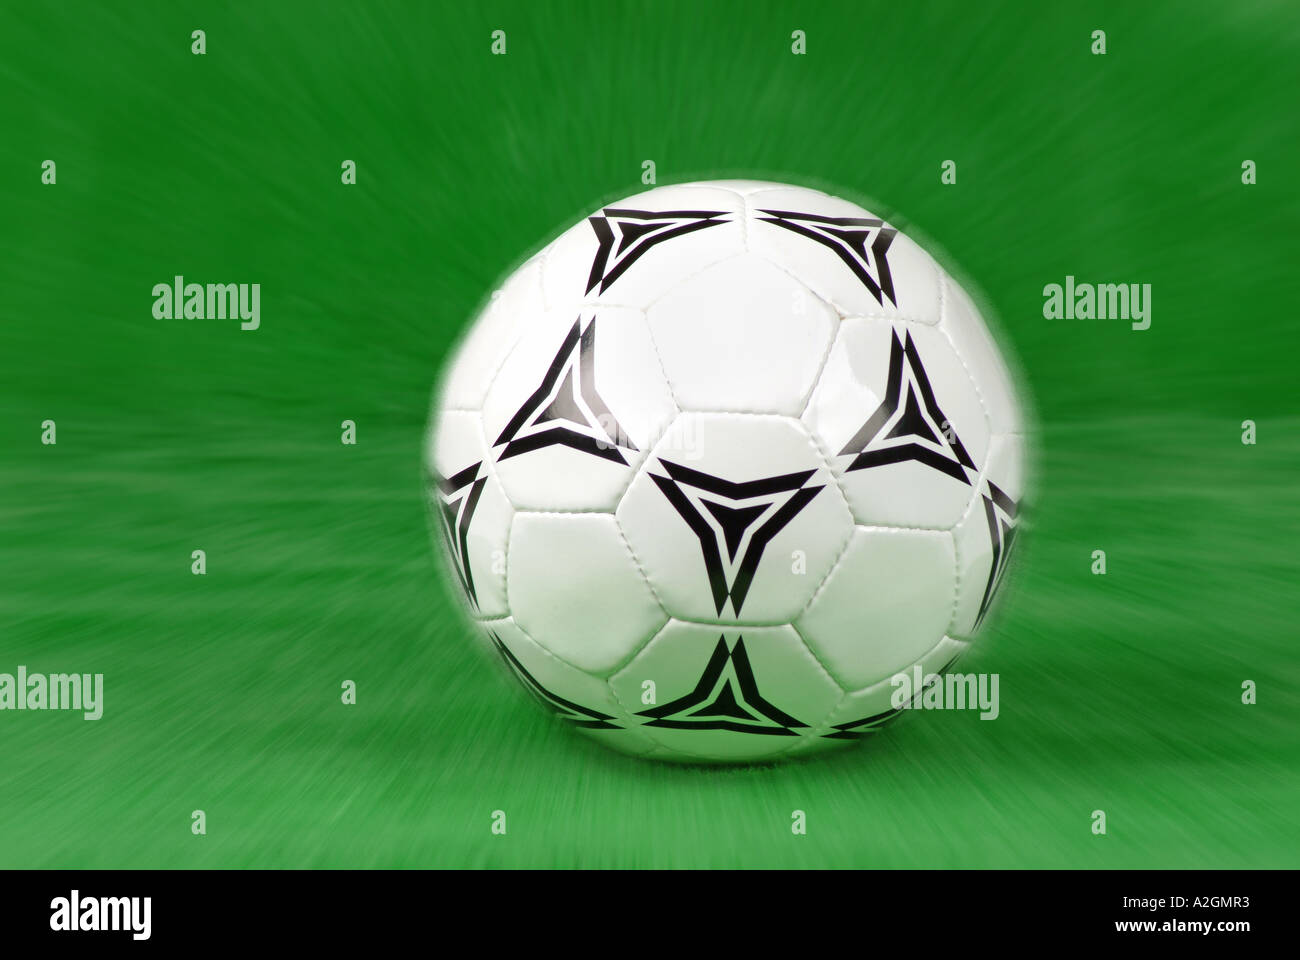 Fußball balón de fútbol Foto de stock